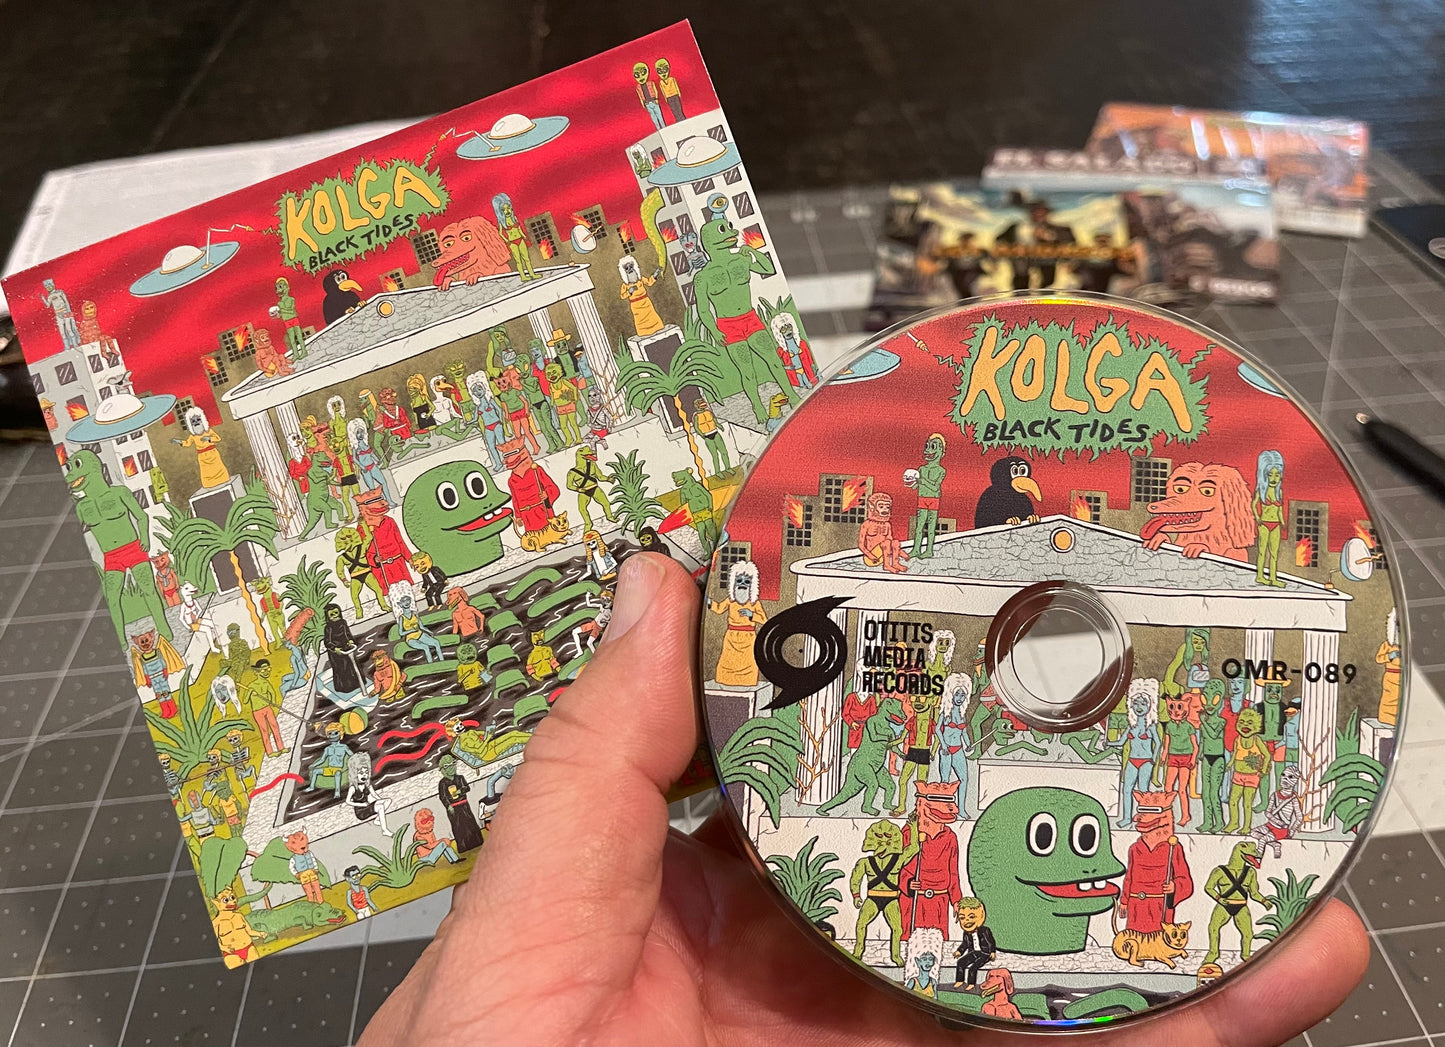 OMR-089 Kolga “Black Tides” CD (Pre-Order!)Release Date 3/29/24!